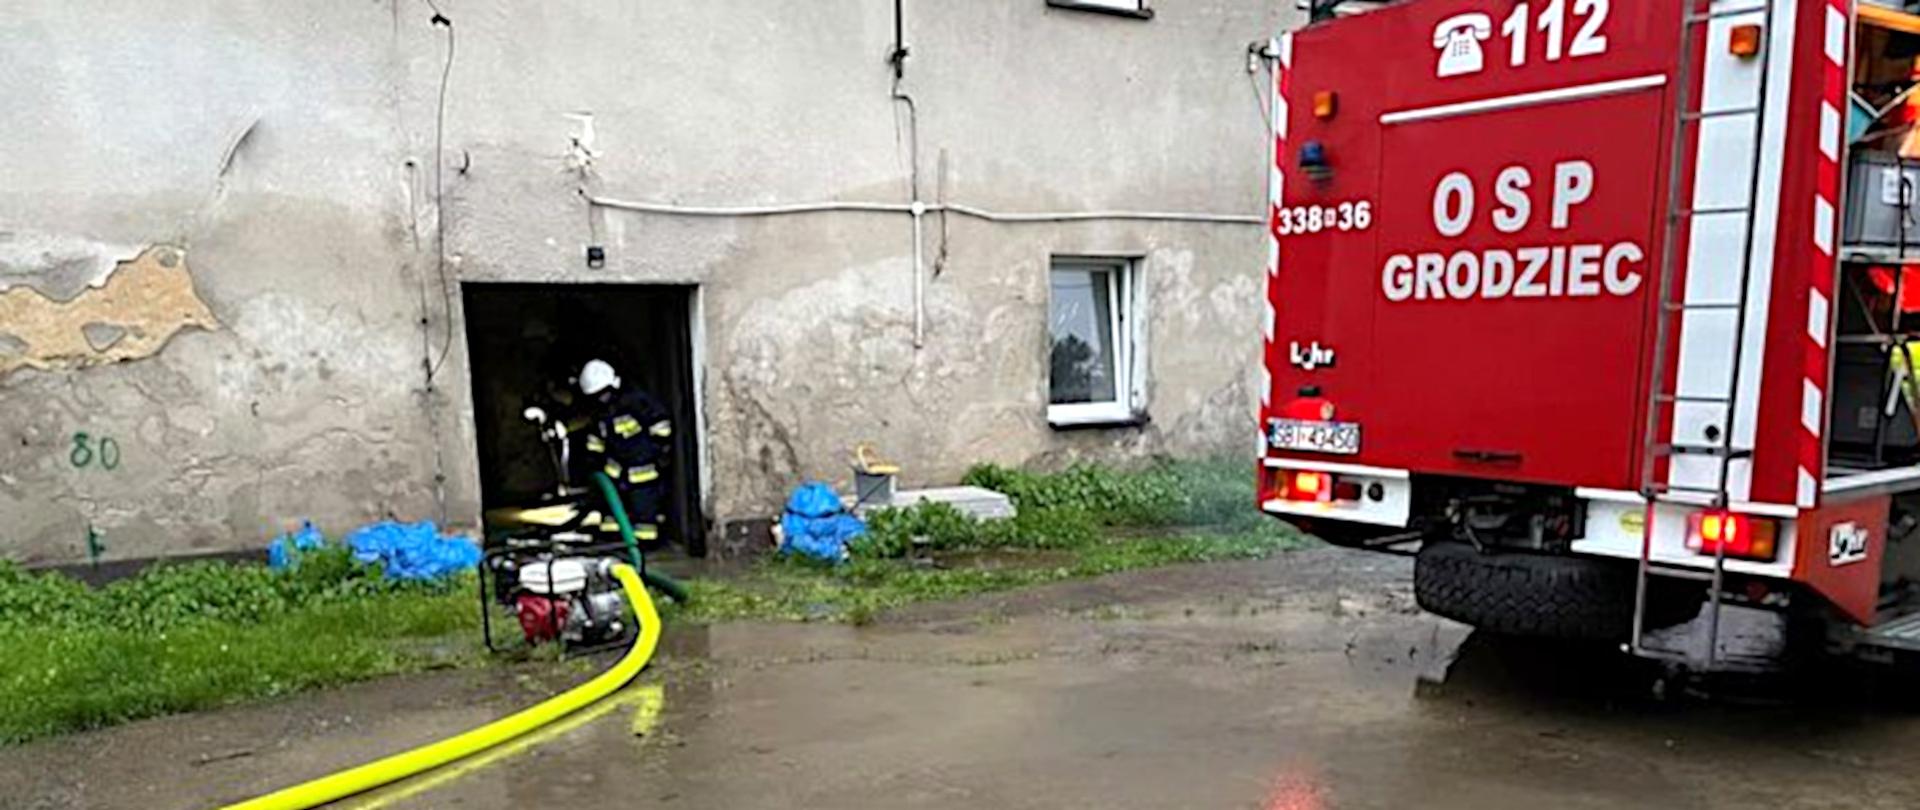 Na zdjęciu widoczna jest zalana wodą ulica przed budynkiem. Po prawej stronie stoi czerwony samochód specjalny OSP. Po lewej stronie w drzwiach budynku stoi przy motopompie dwóch strażaków w ubraniach specjalnych. Strażacy wypompowują wodę z piwnicy budynku.